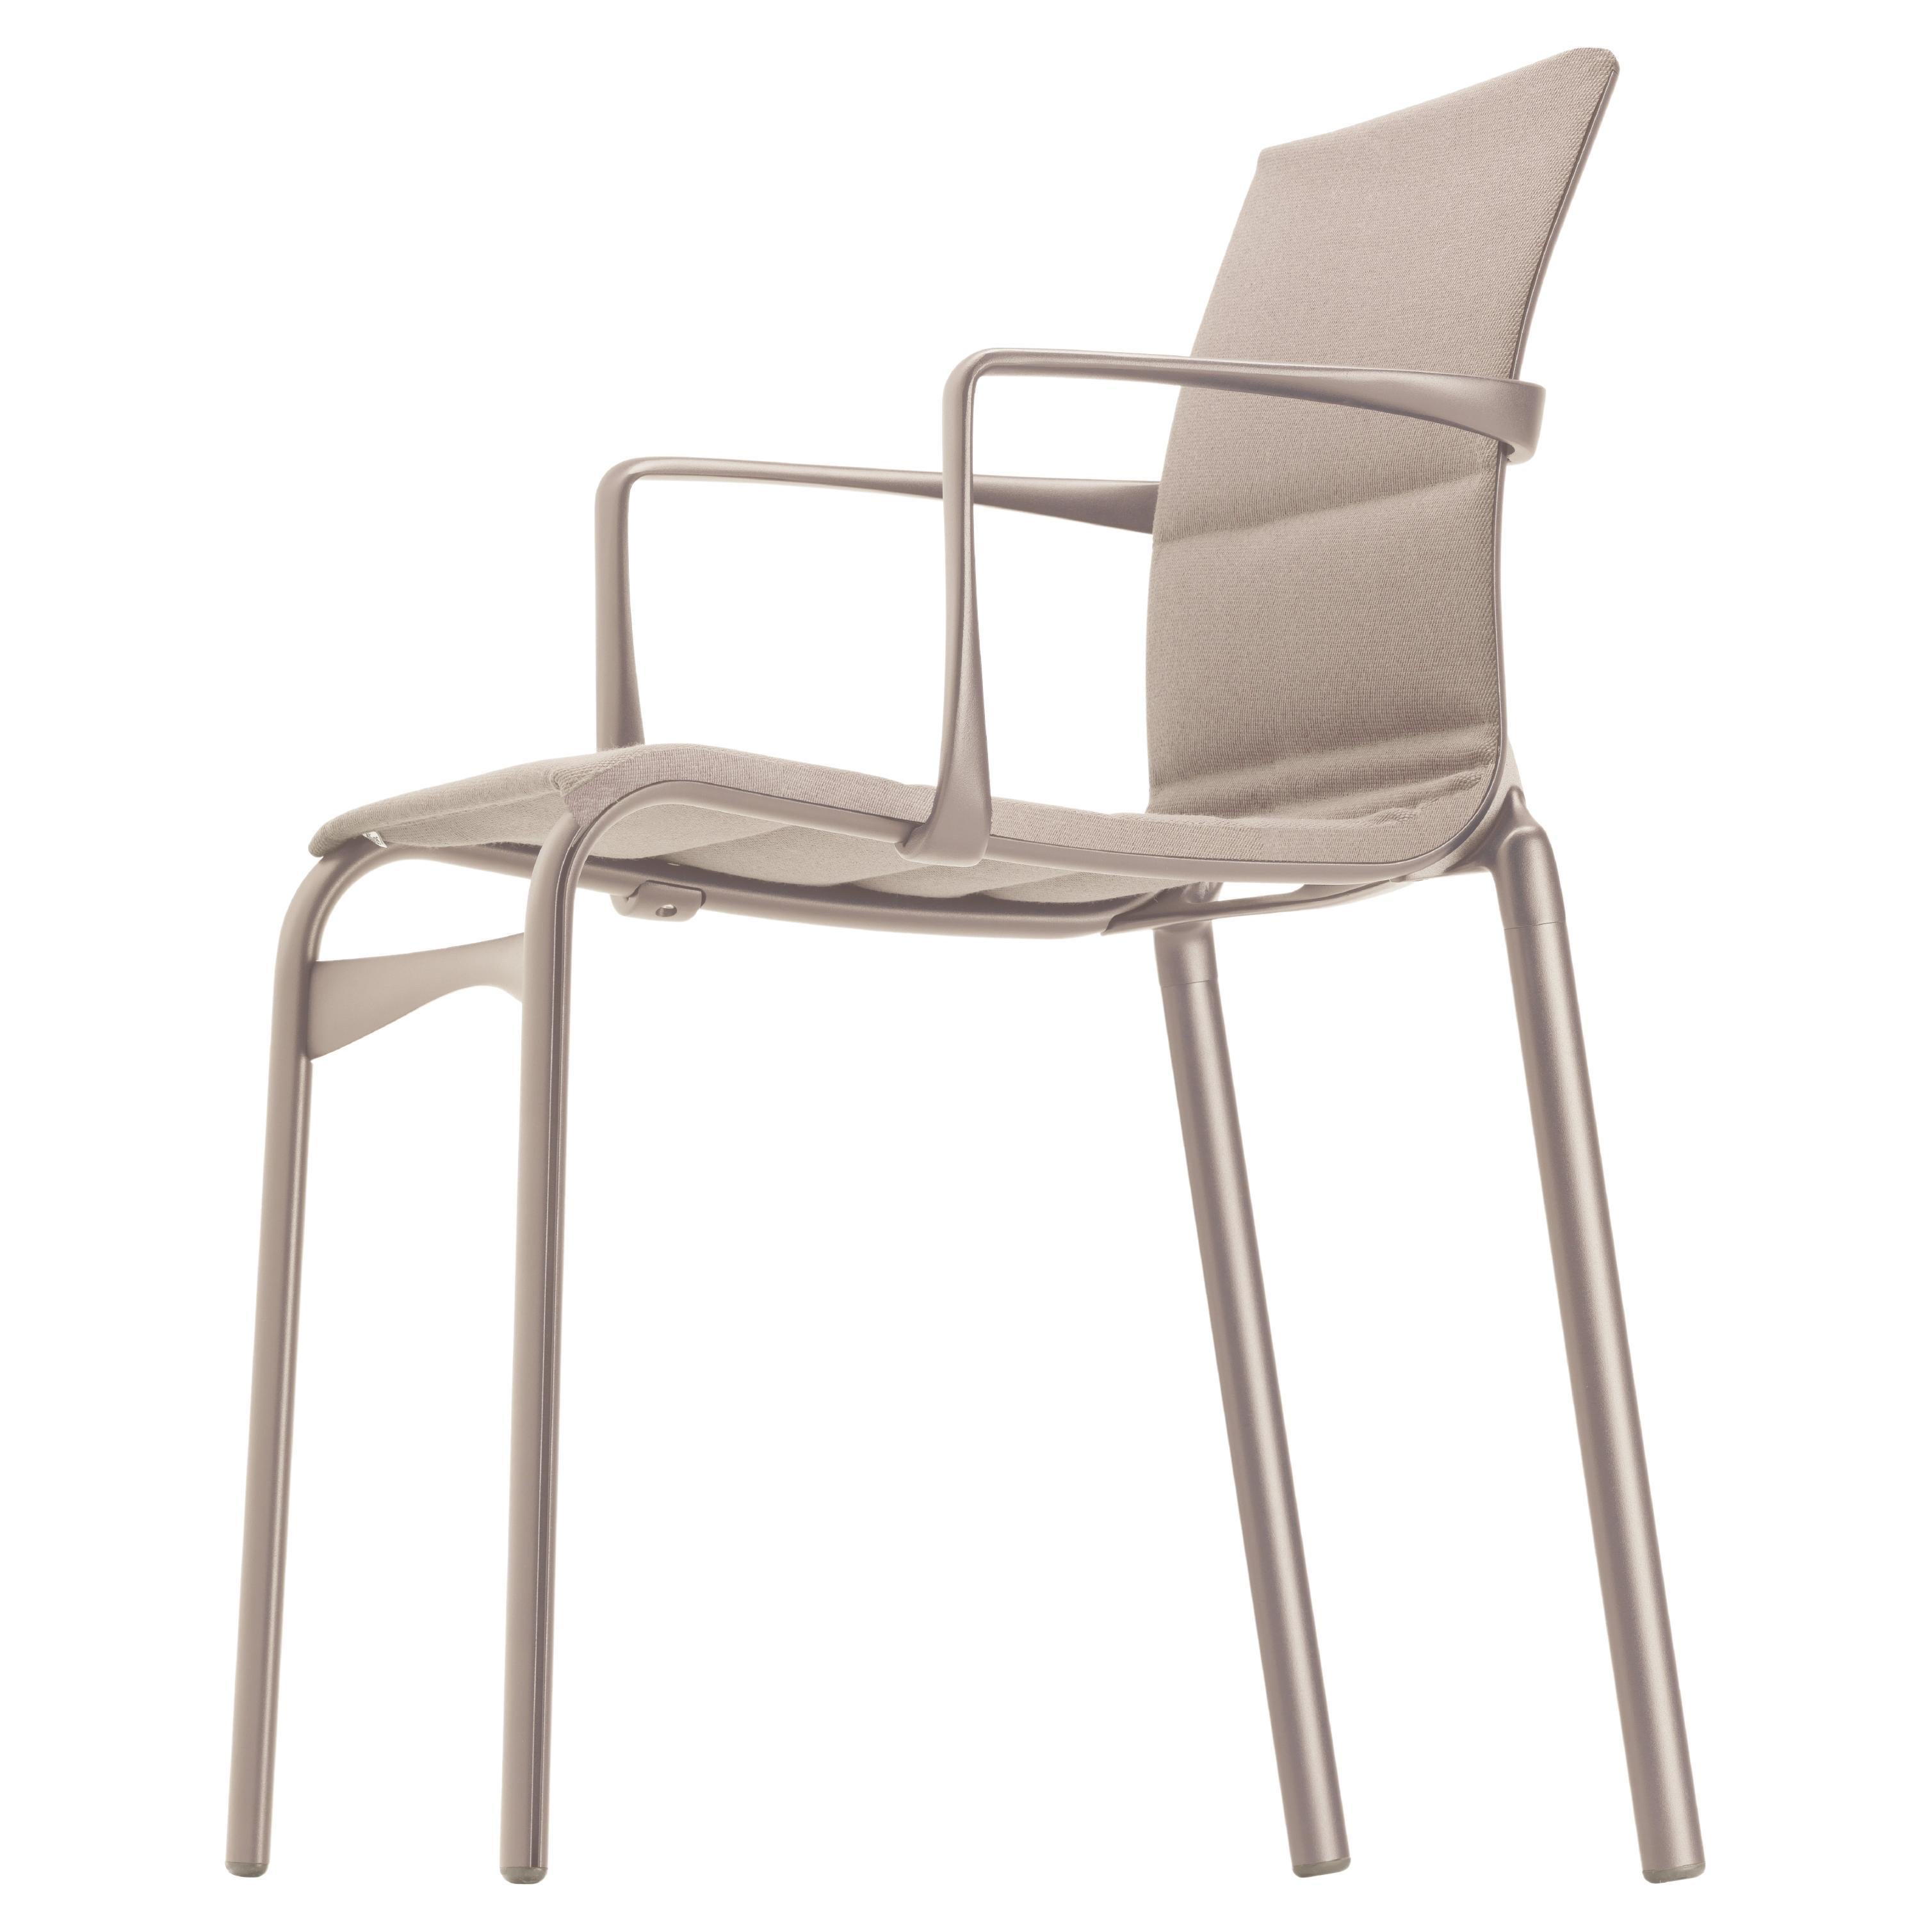 Chaise à haut cadre Alias 417 avec assise beige et cadre en aluminium laqué sable